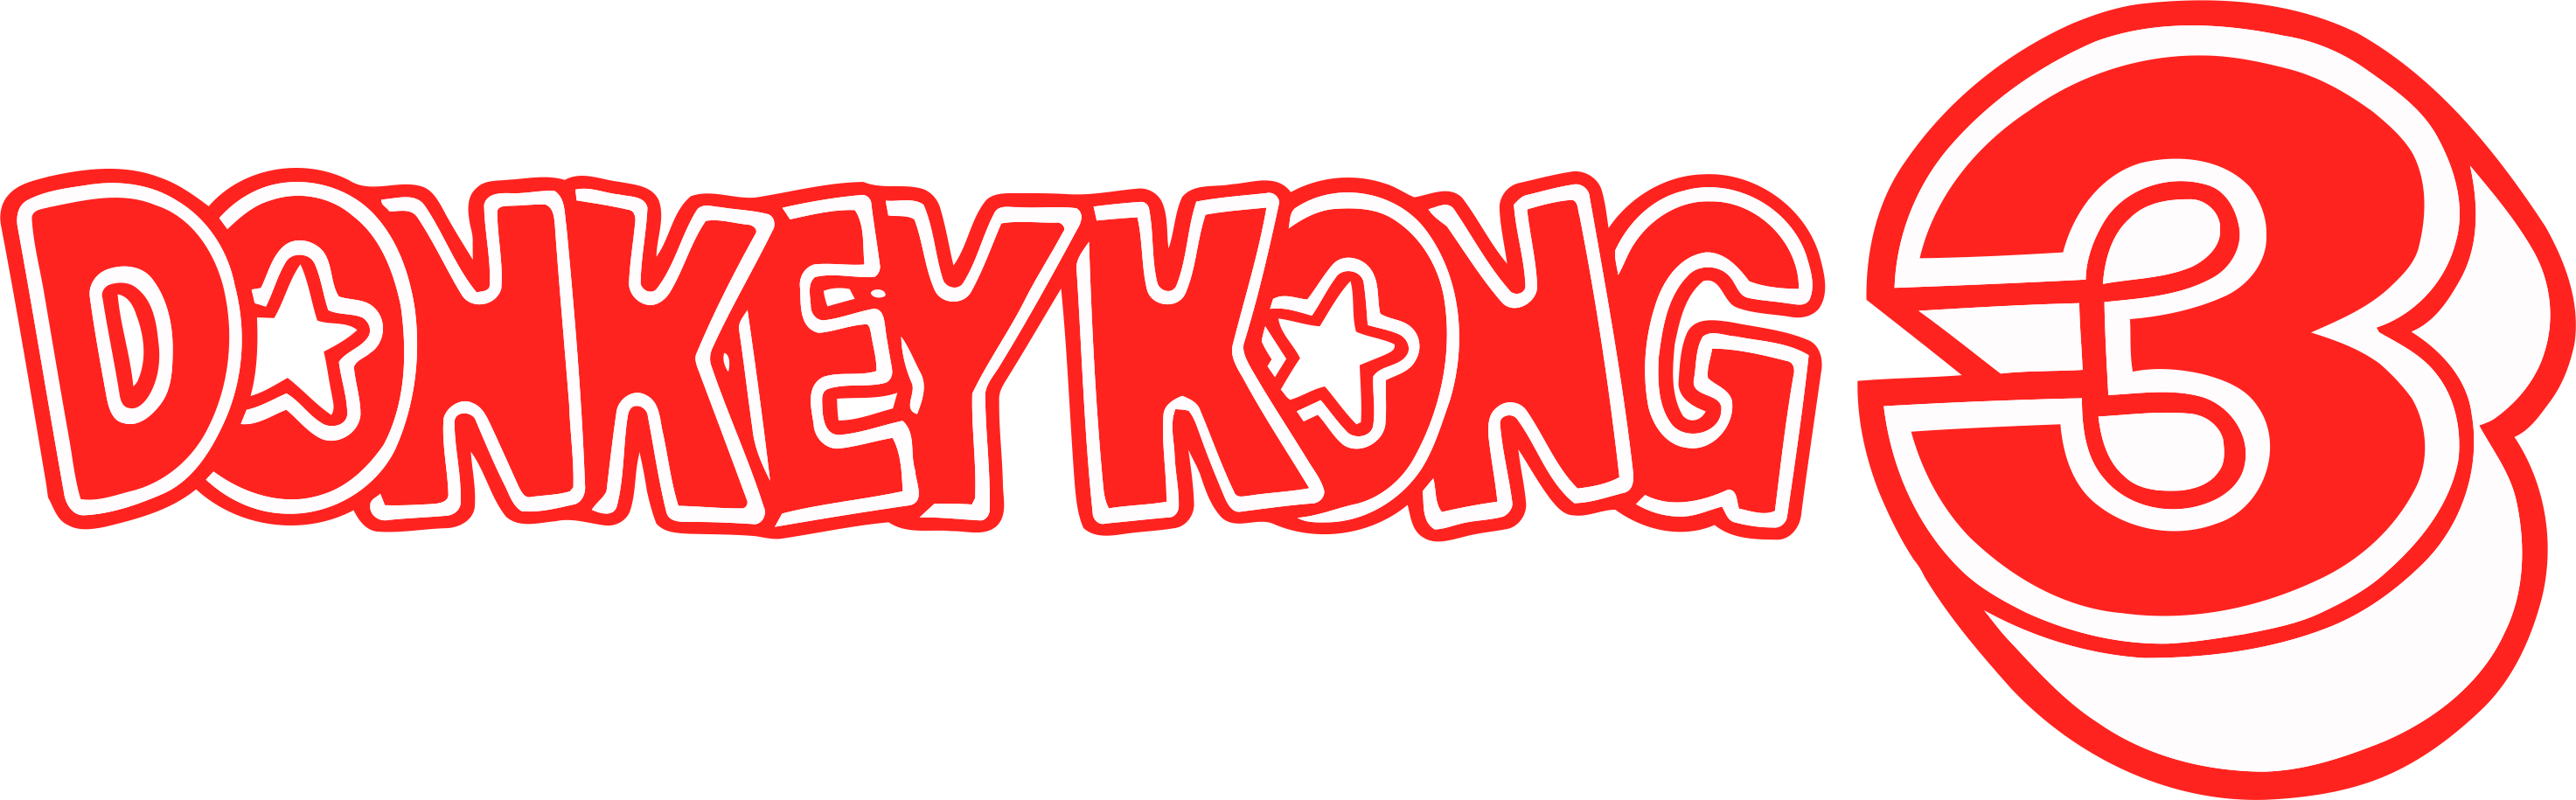 donkey kong arcade logo